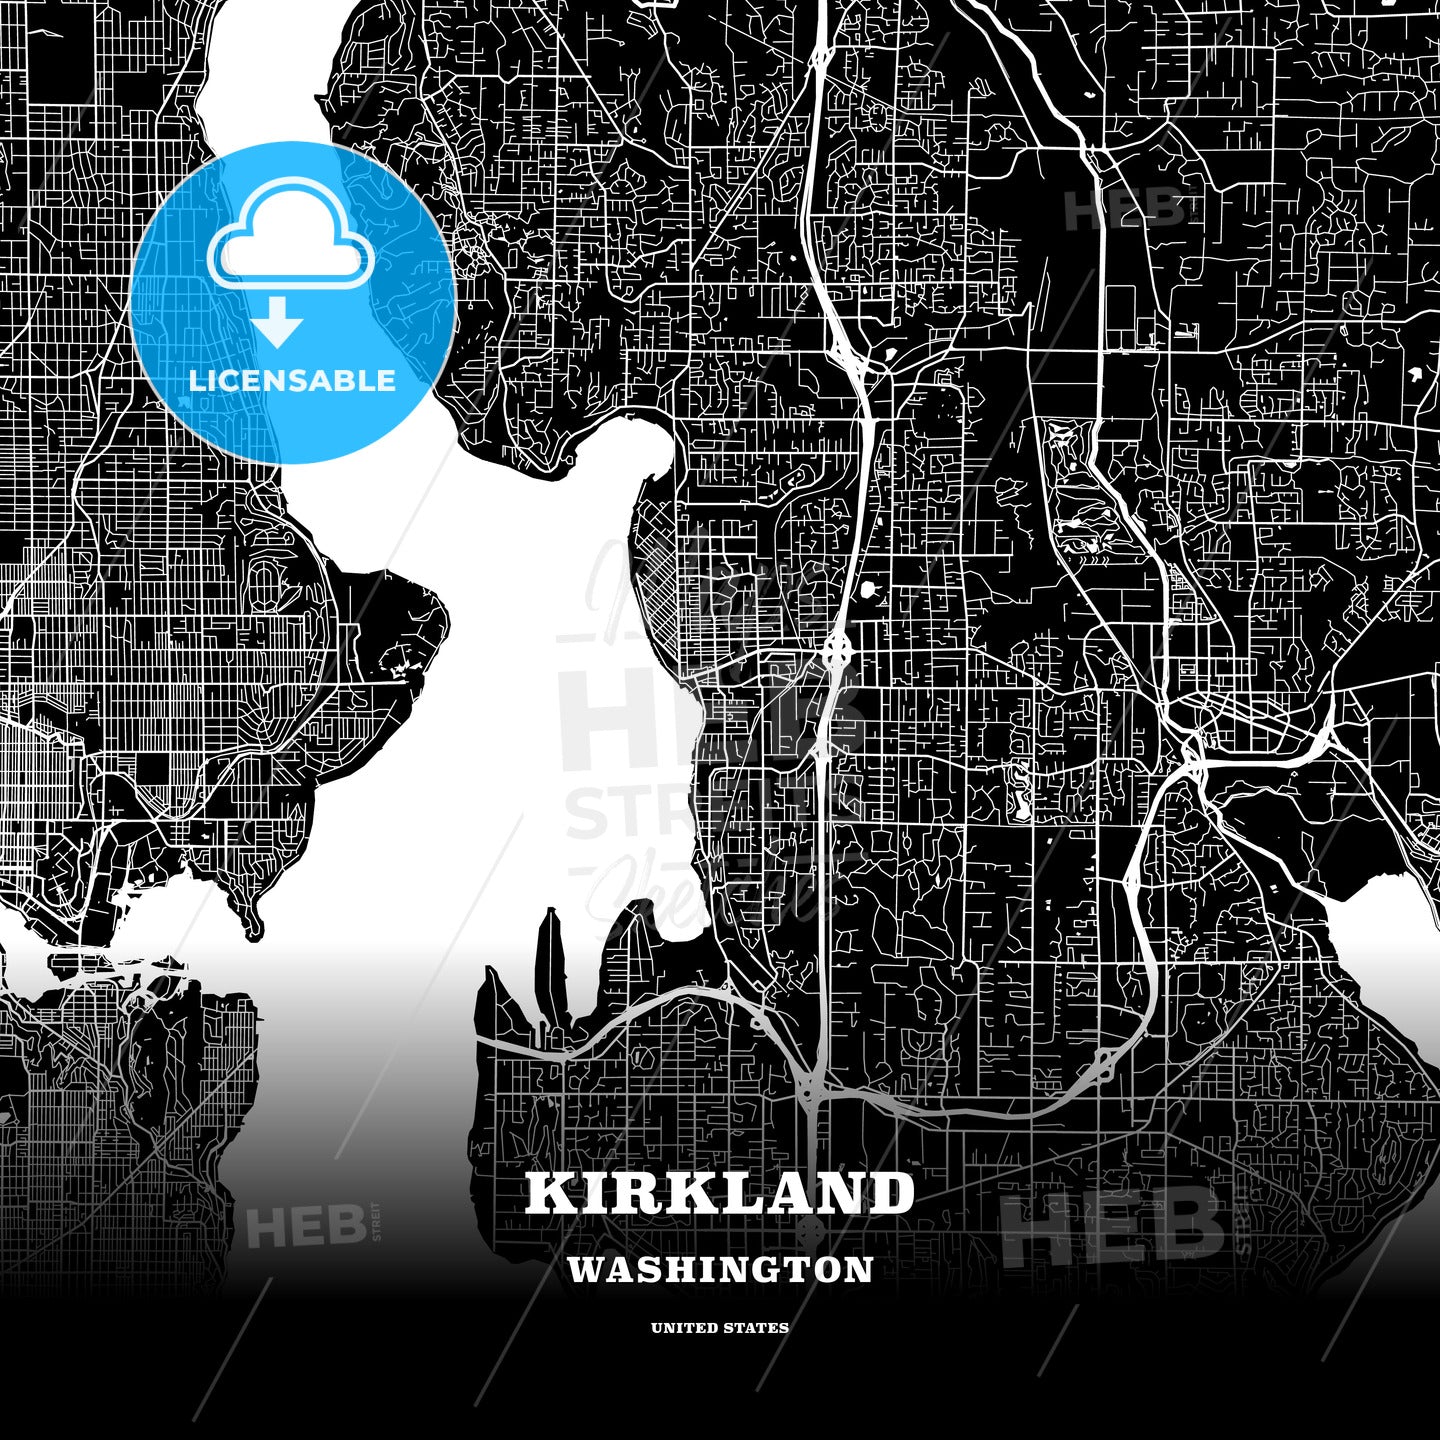 Kirkland, Washington, USA map